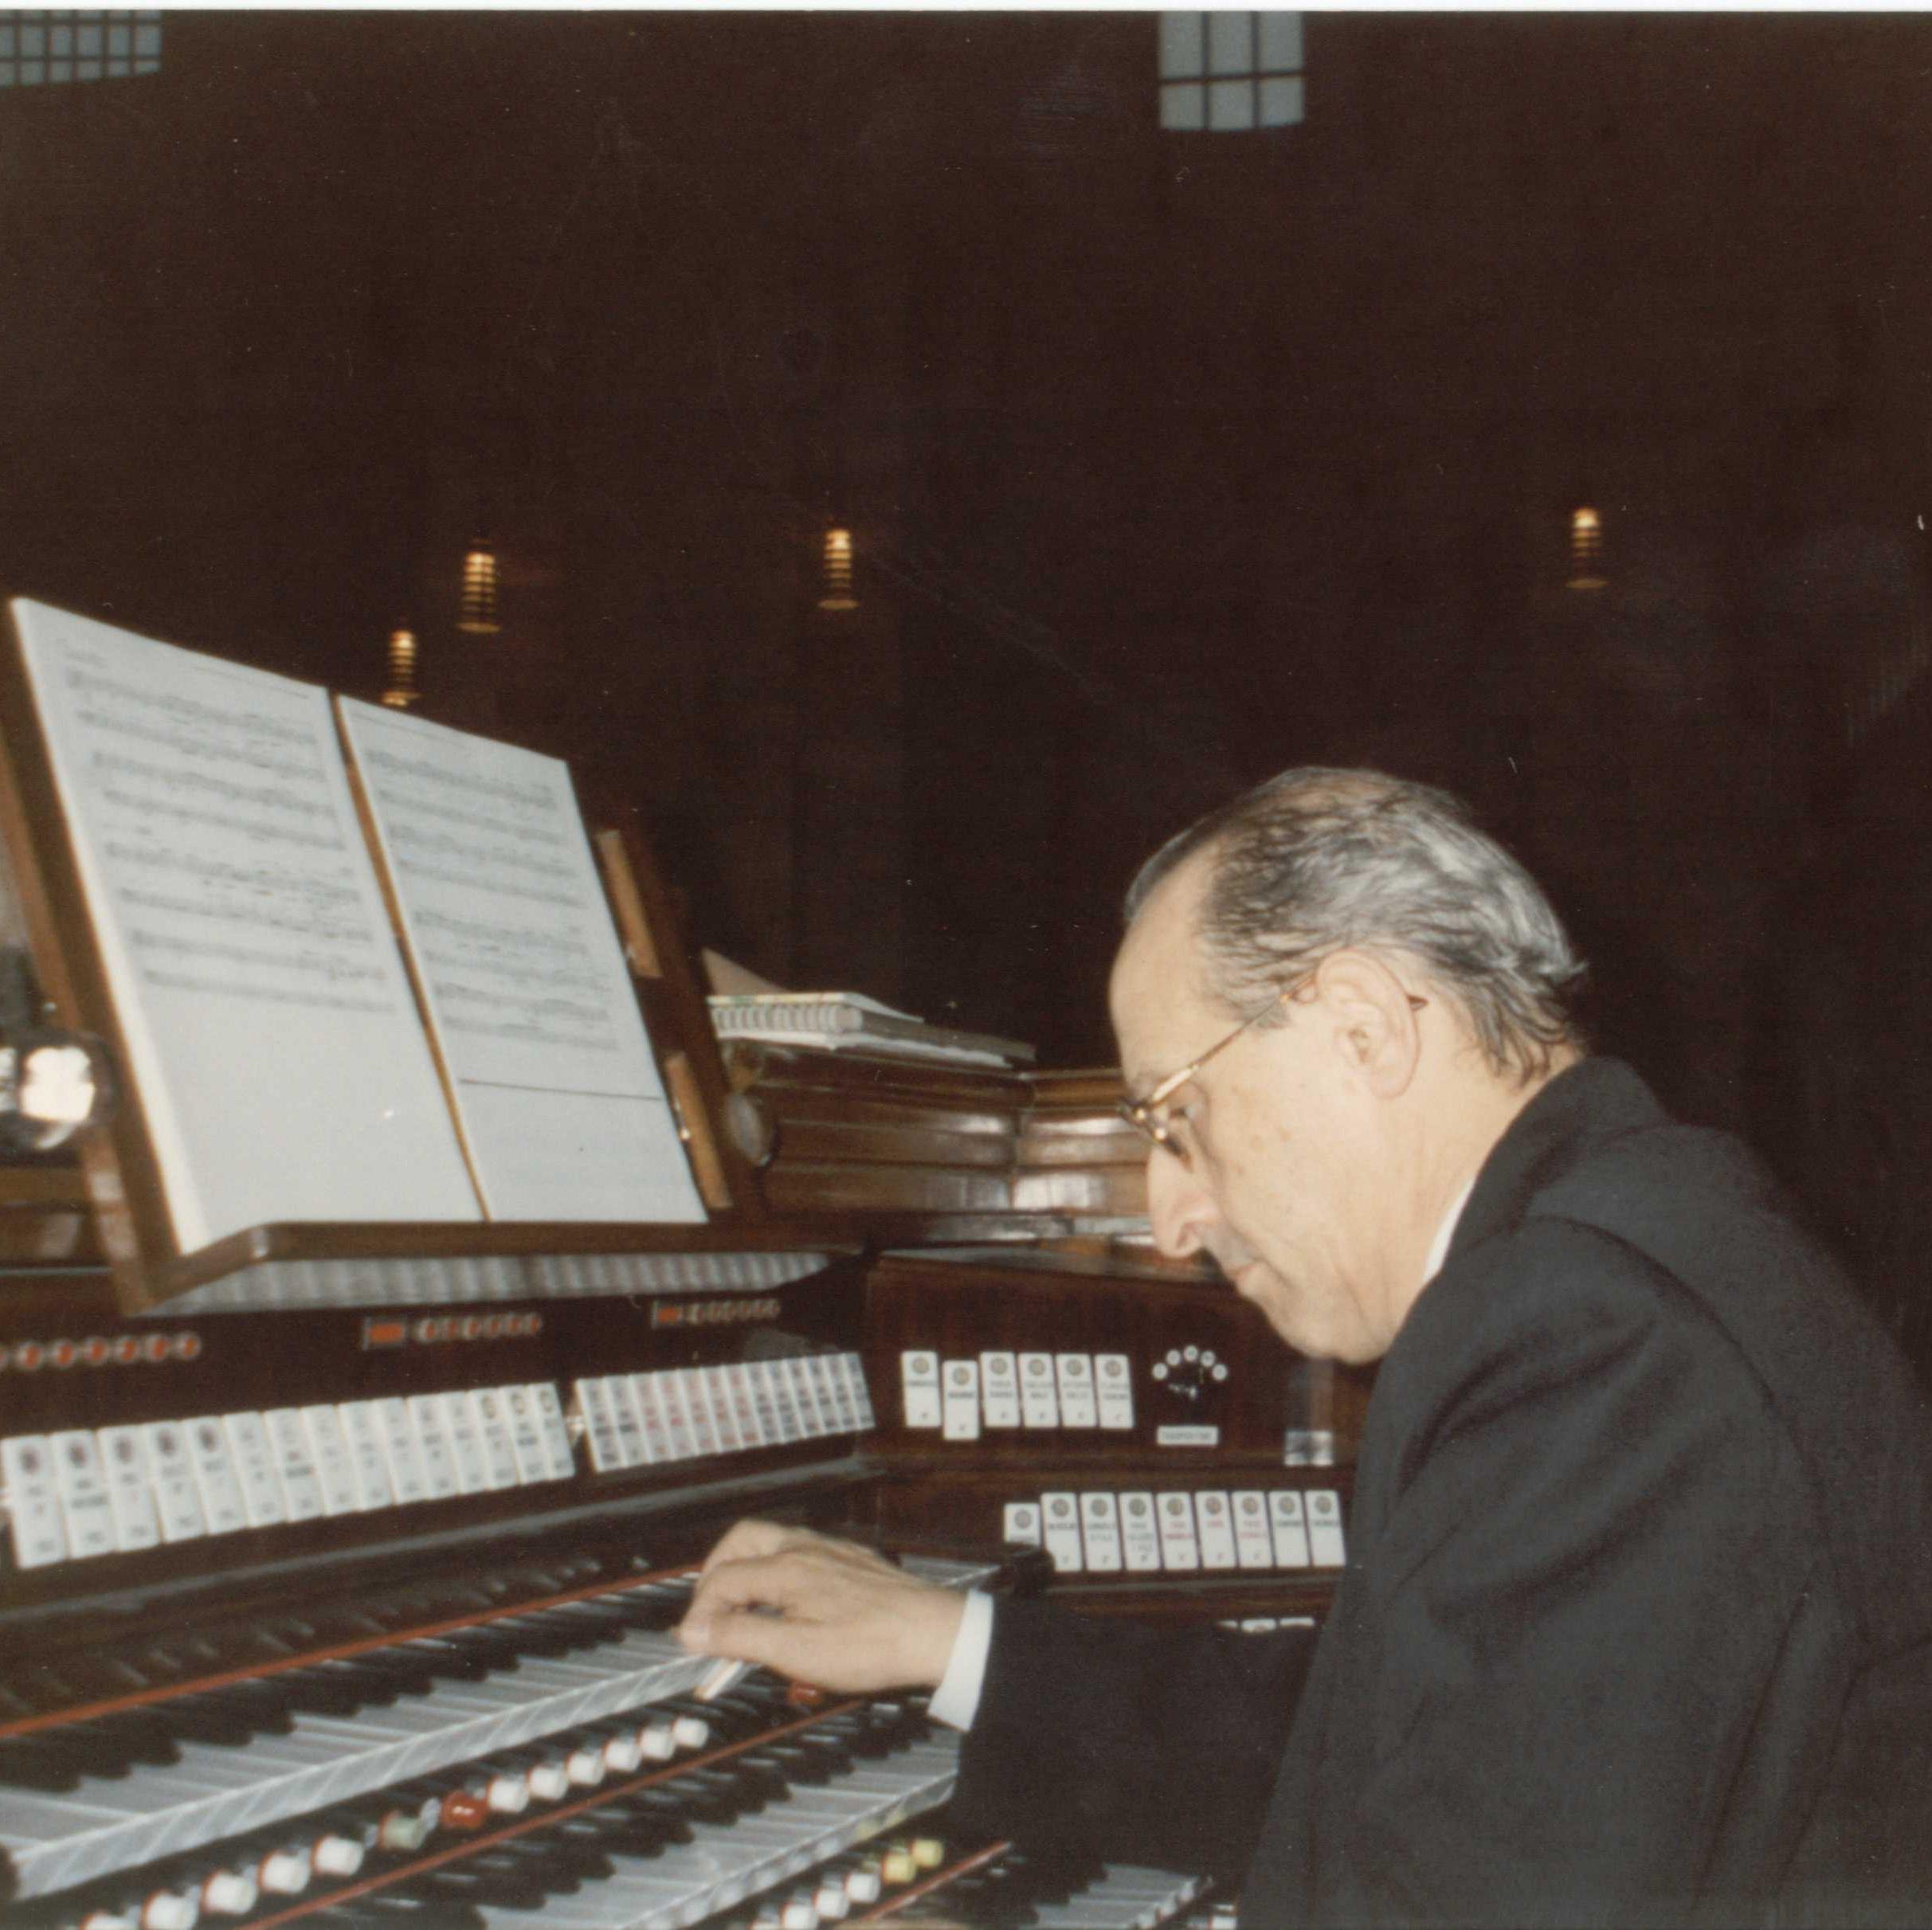 Associazione culturale-musicale Onlus dedicata al sacerdote, musicista e compositore camilliano Giovanni Maria Rossi